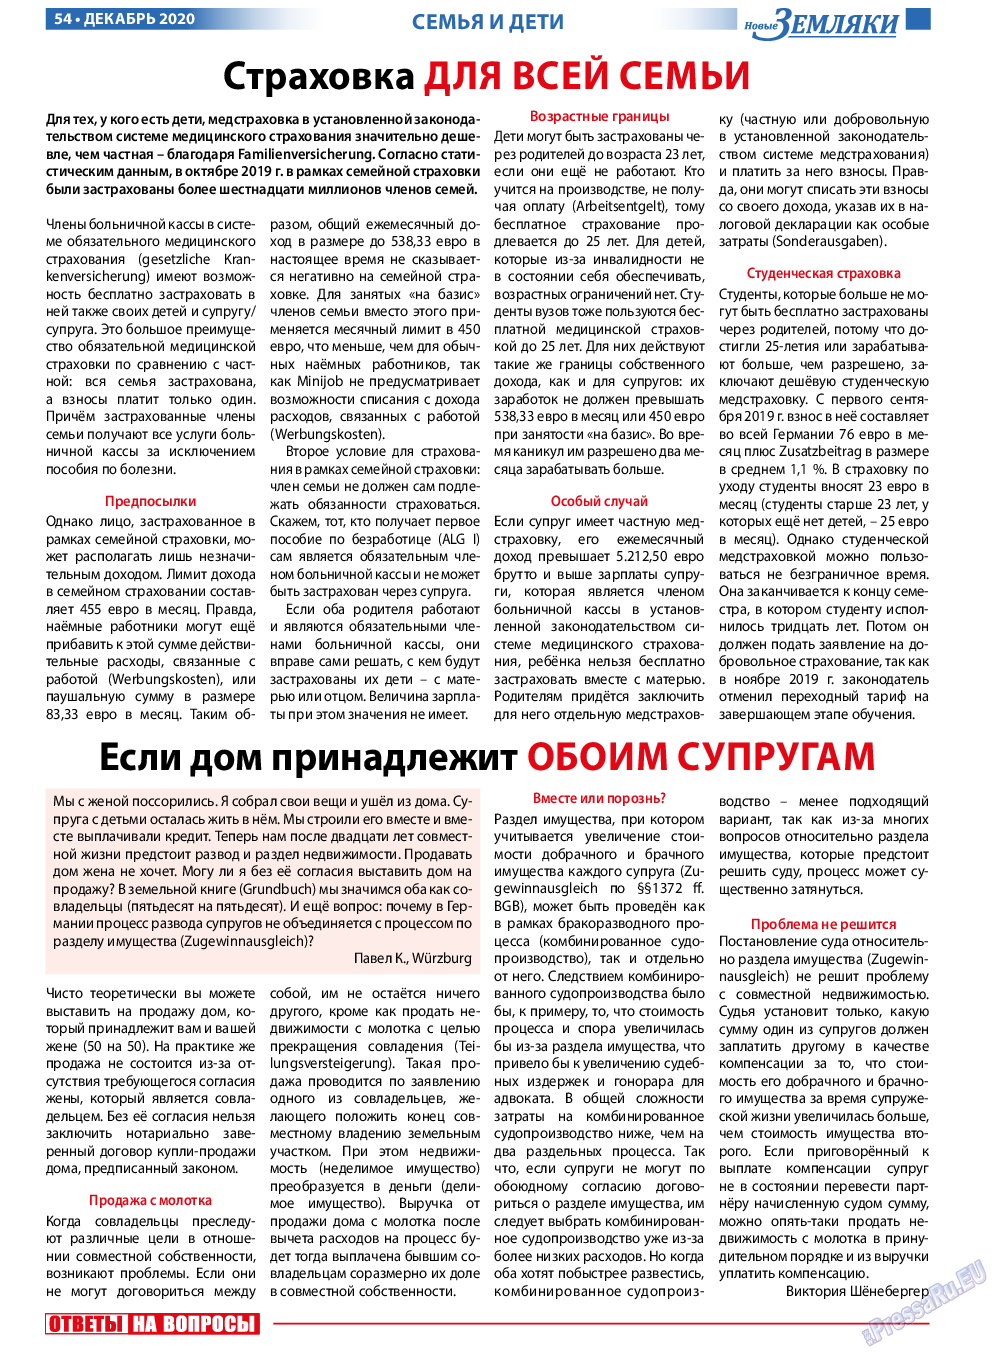 Новые Земляки, газета. 2020 №12 стр.54